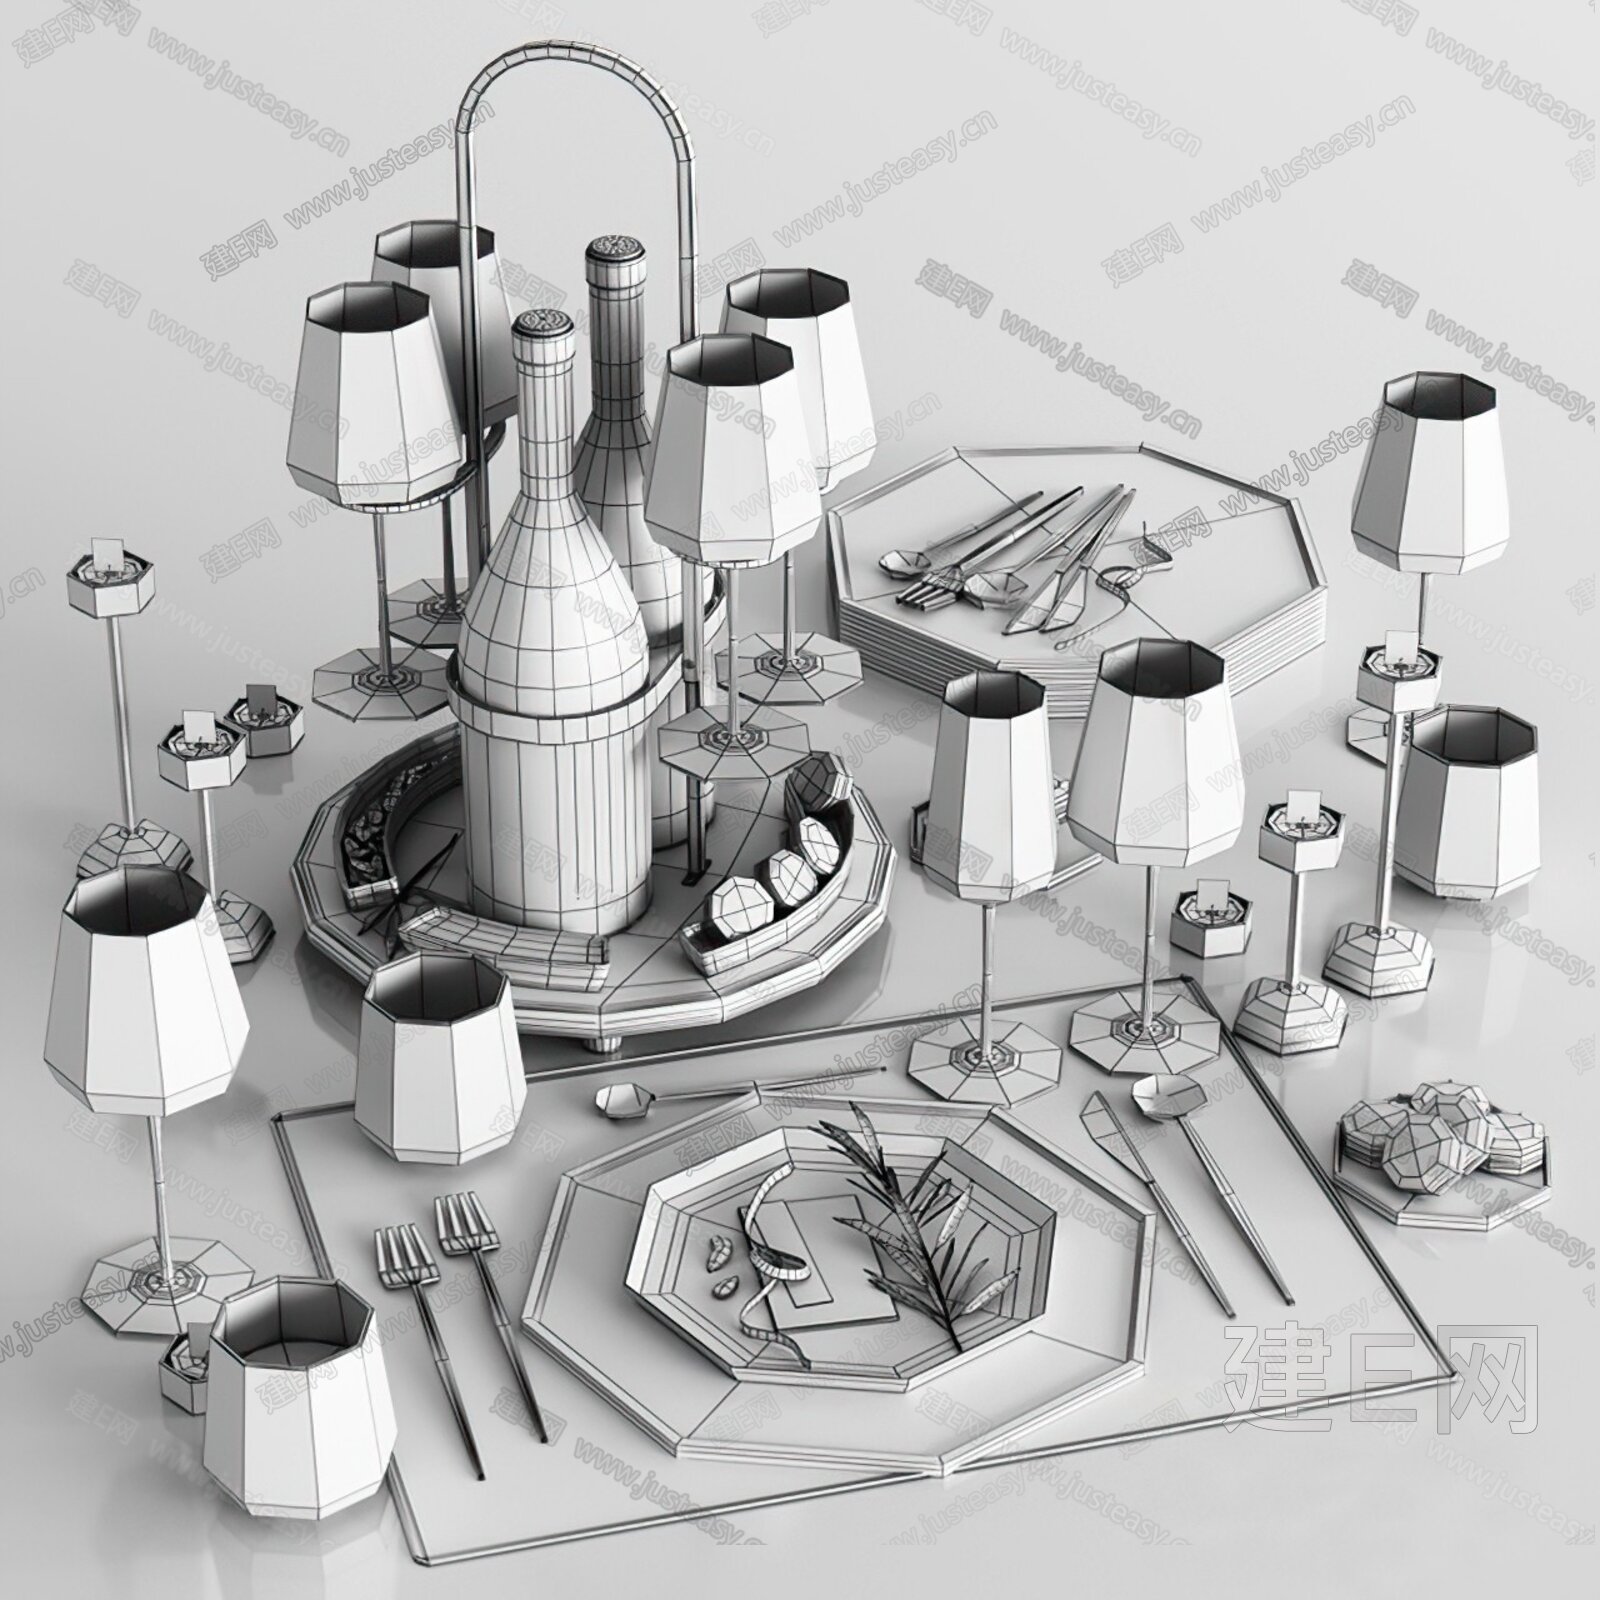 【概念设计】Cutlery ZED 具有现代感的餐具设计 - 普象网